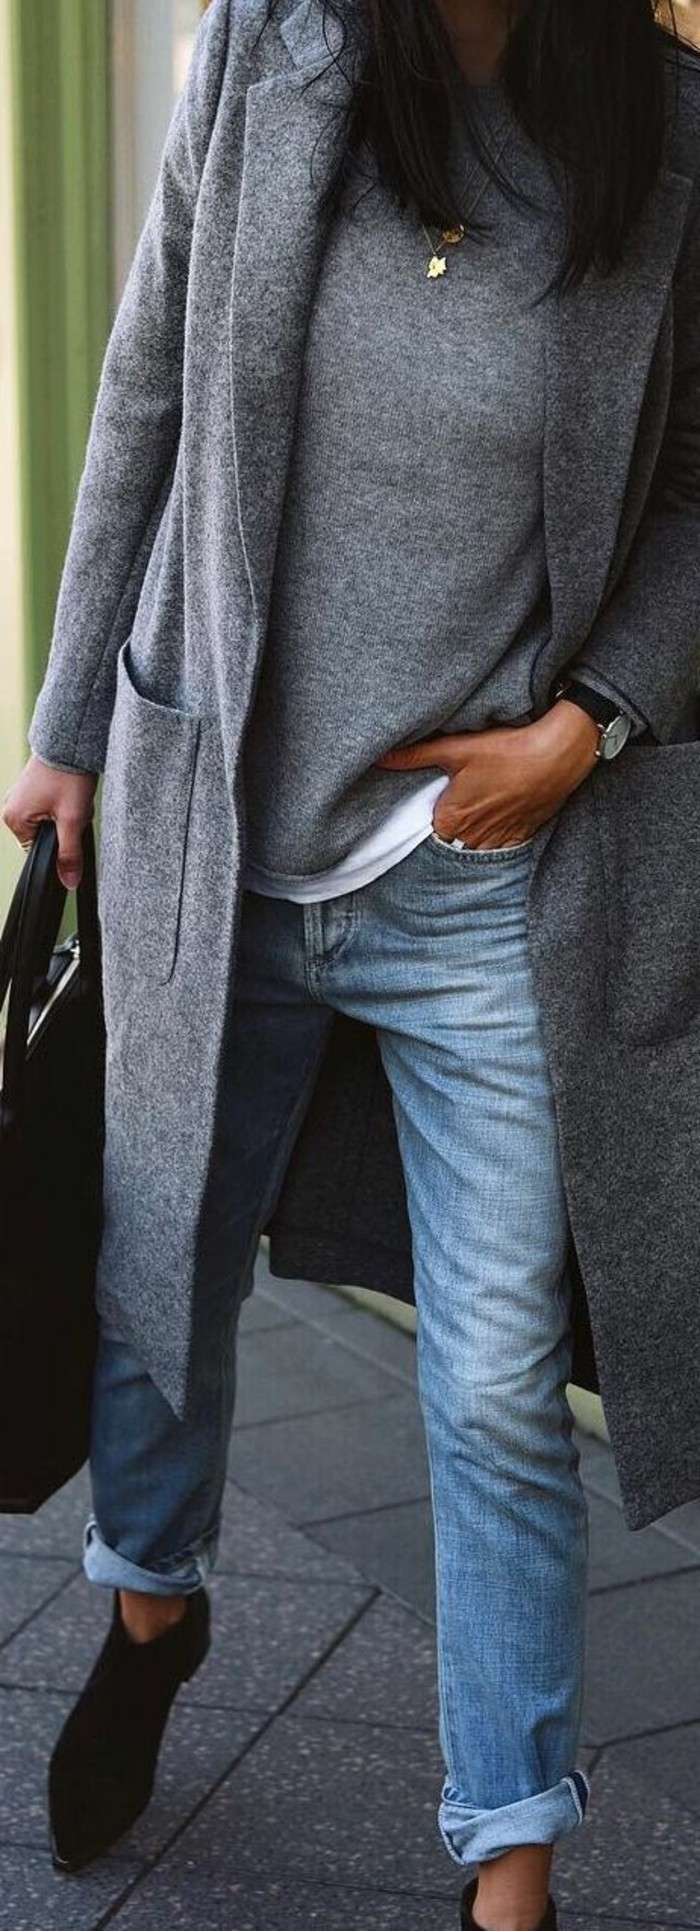 grå jakke outfit vinter modetrends jakke lang